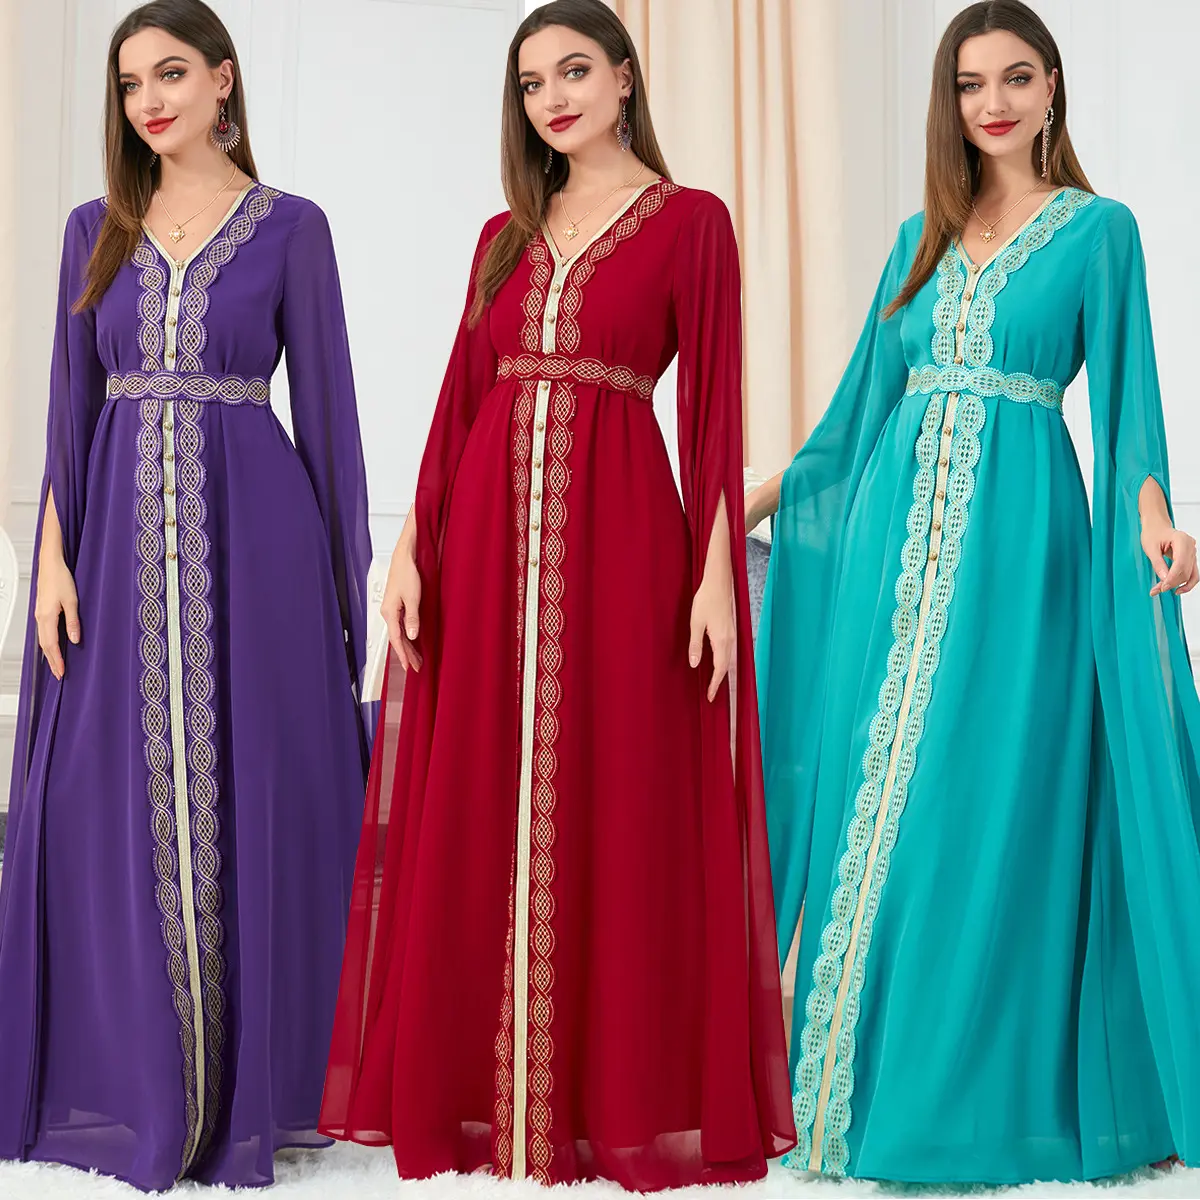 Indien-lange Saris für muslimische Frau, islamische Kleidung, pakistani sche Salwar Kameez